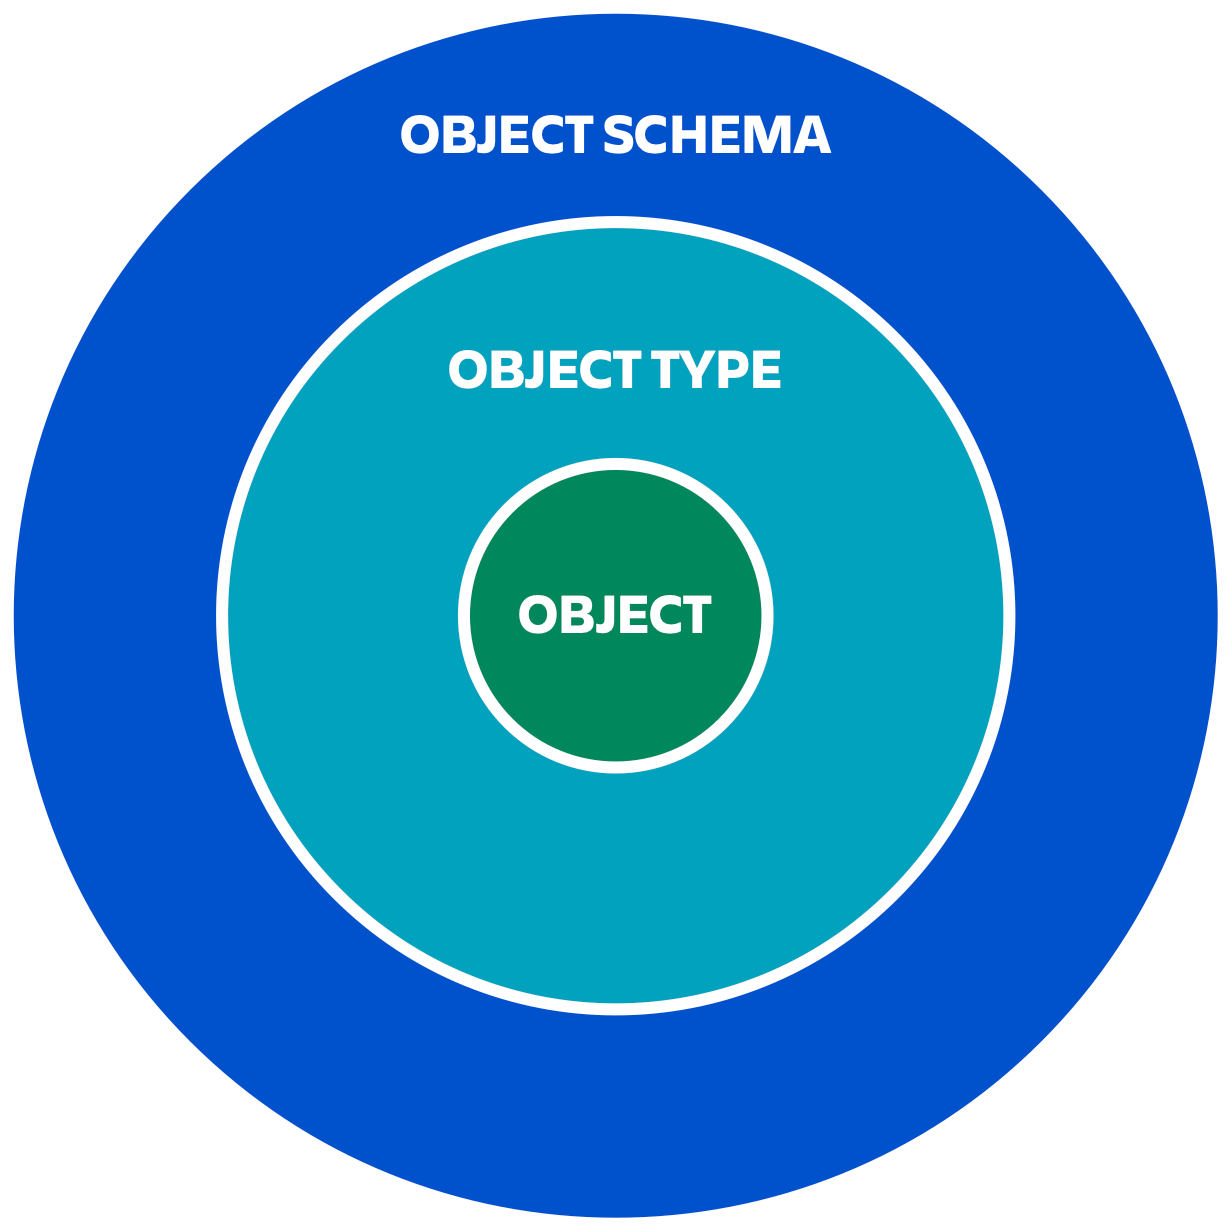 Диаграмма с объектом в центре, типом объекта на уровне выше и схемой объектов на самом высоком уровне